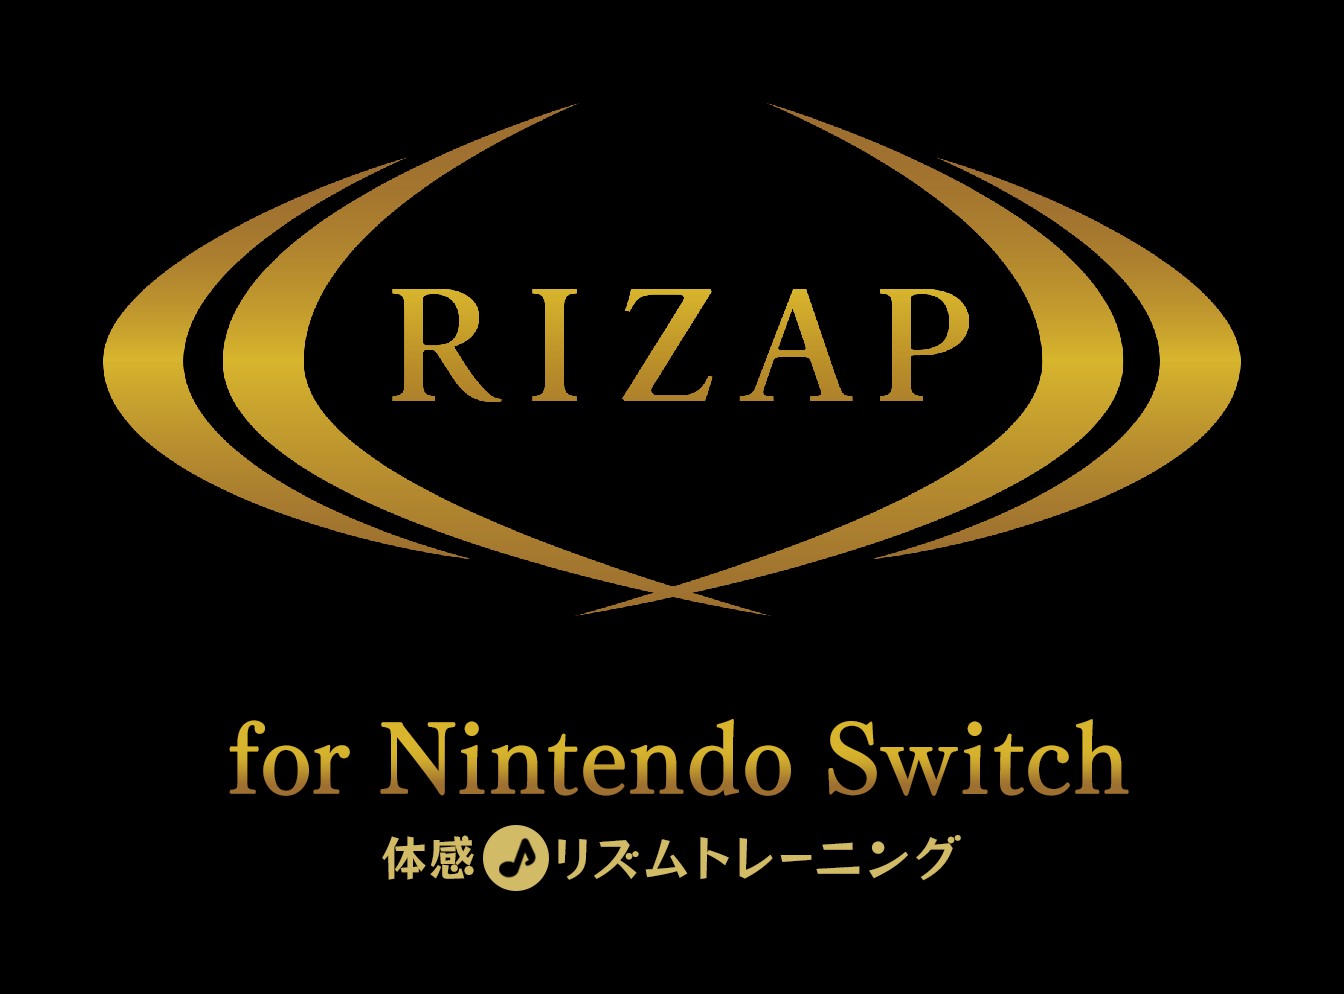 RIZAPNintendo SwitchɁIwRIZAP for Nintendo Switch `̊􃊃Yg[jO`x627i؁jɔI